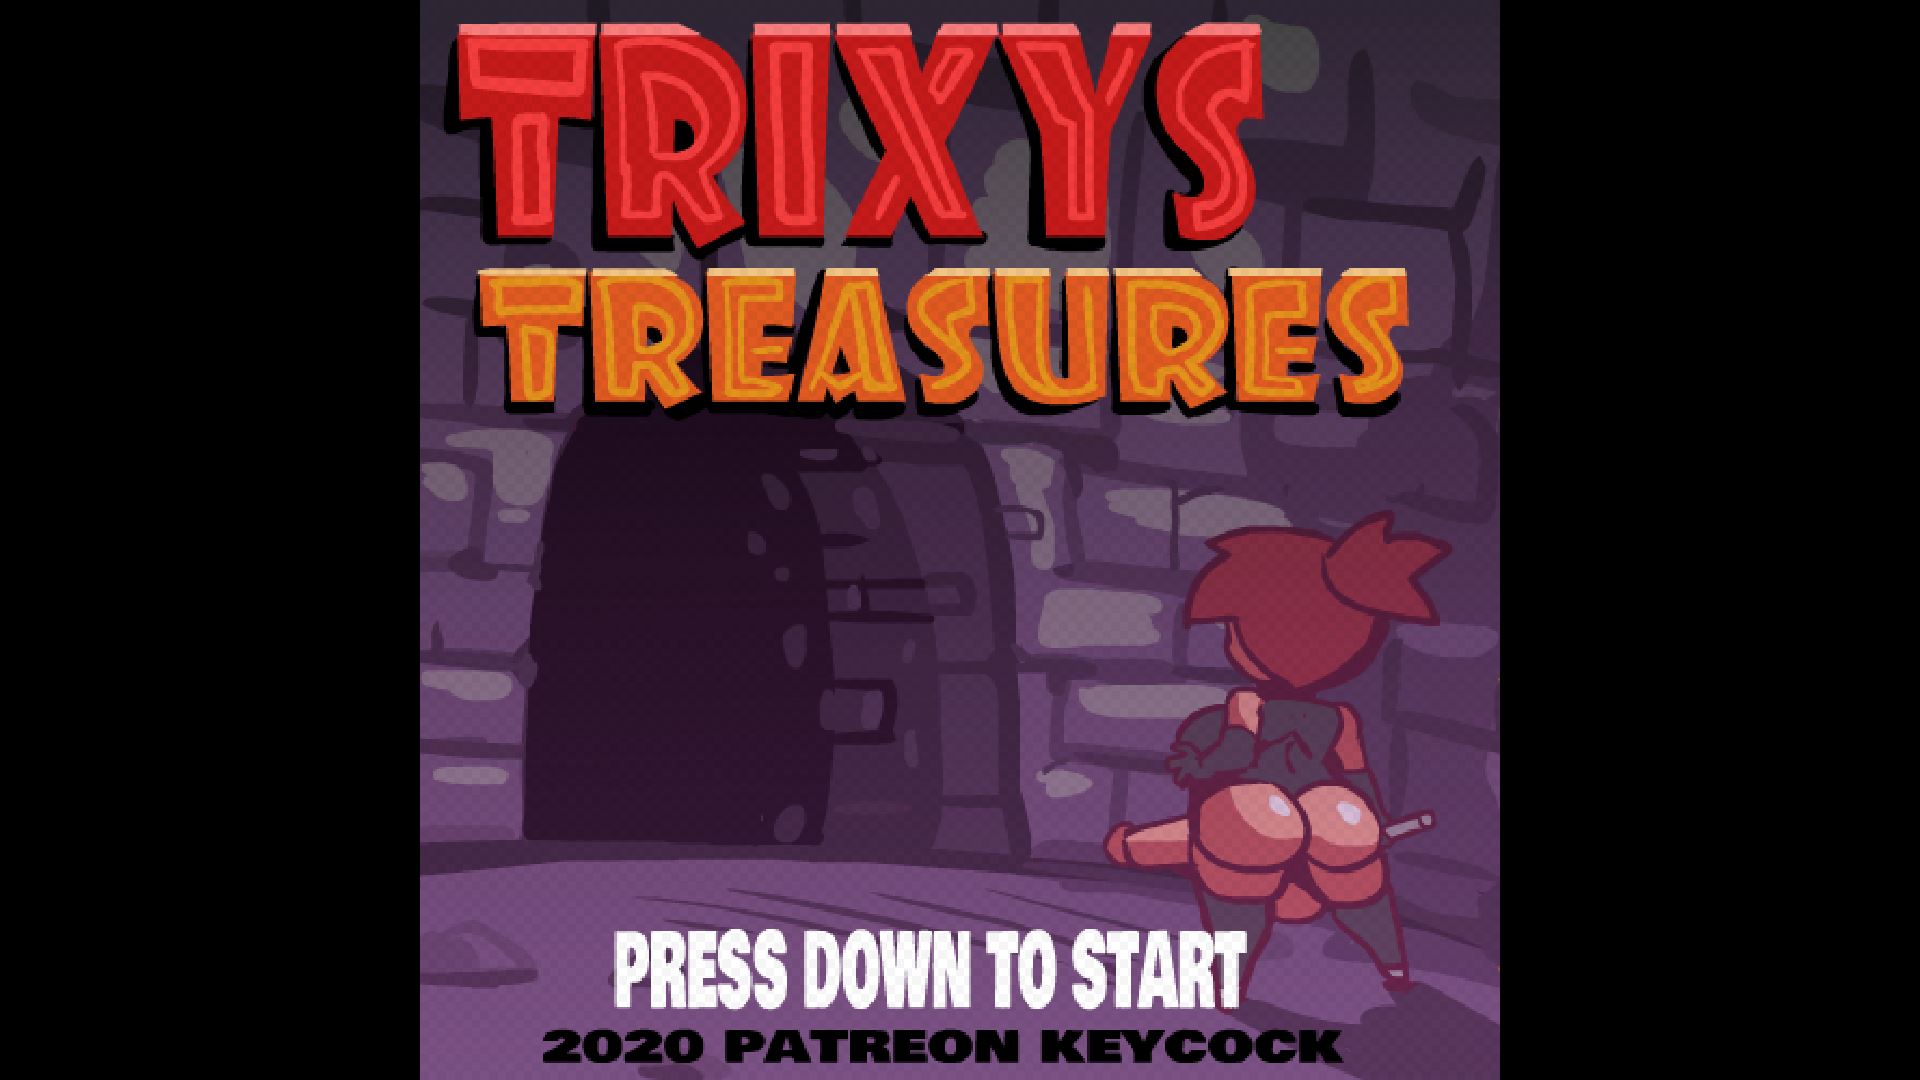 Trixys treasures